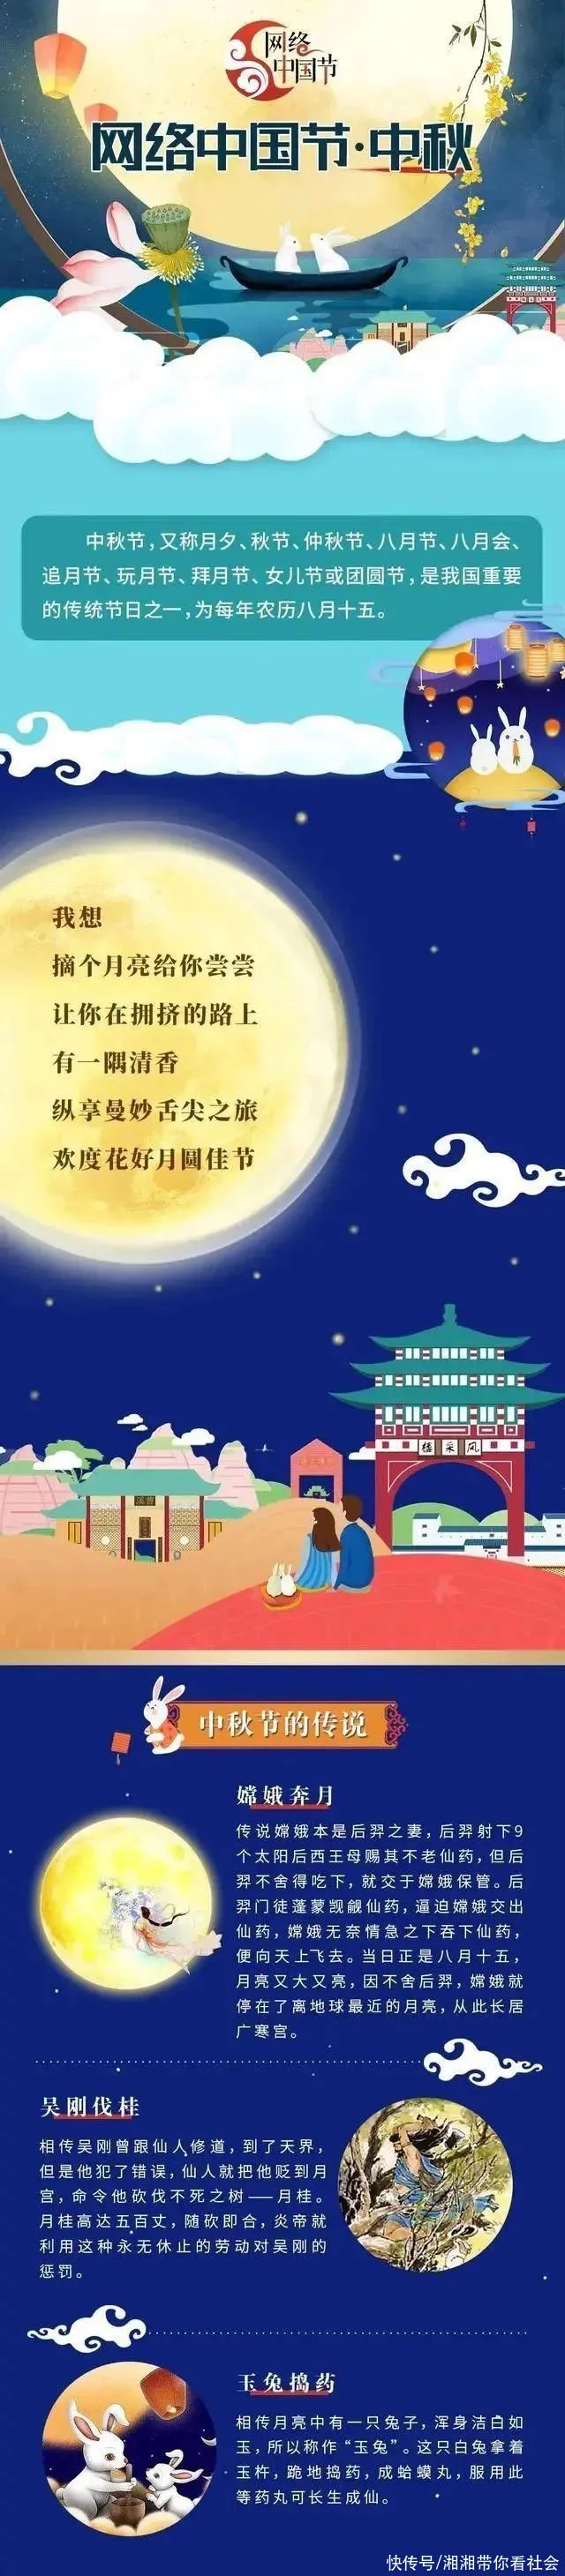 传统节日中秋节的由来 中国传统节日中秋节的起源与来历英文